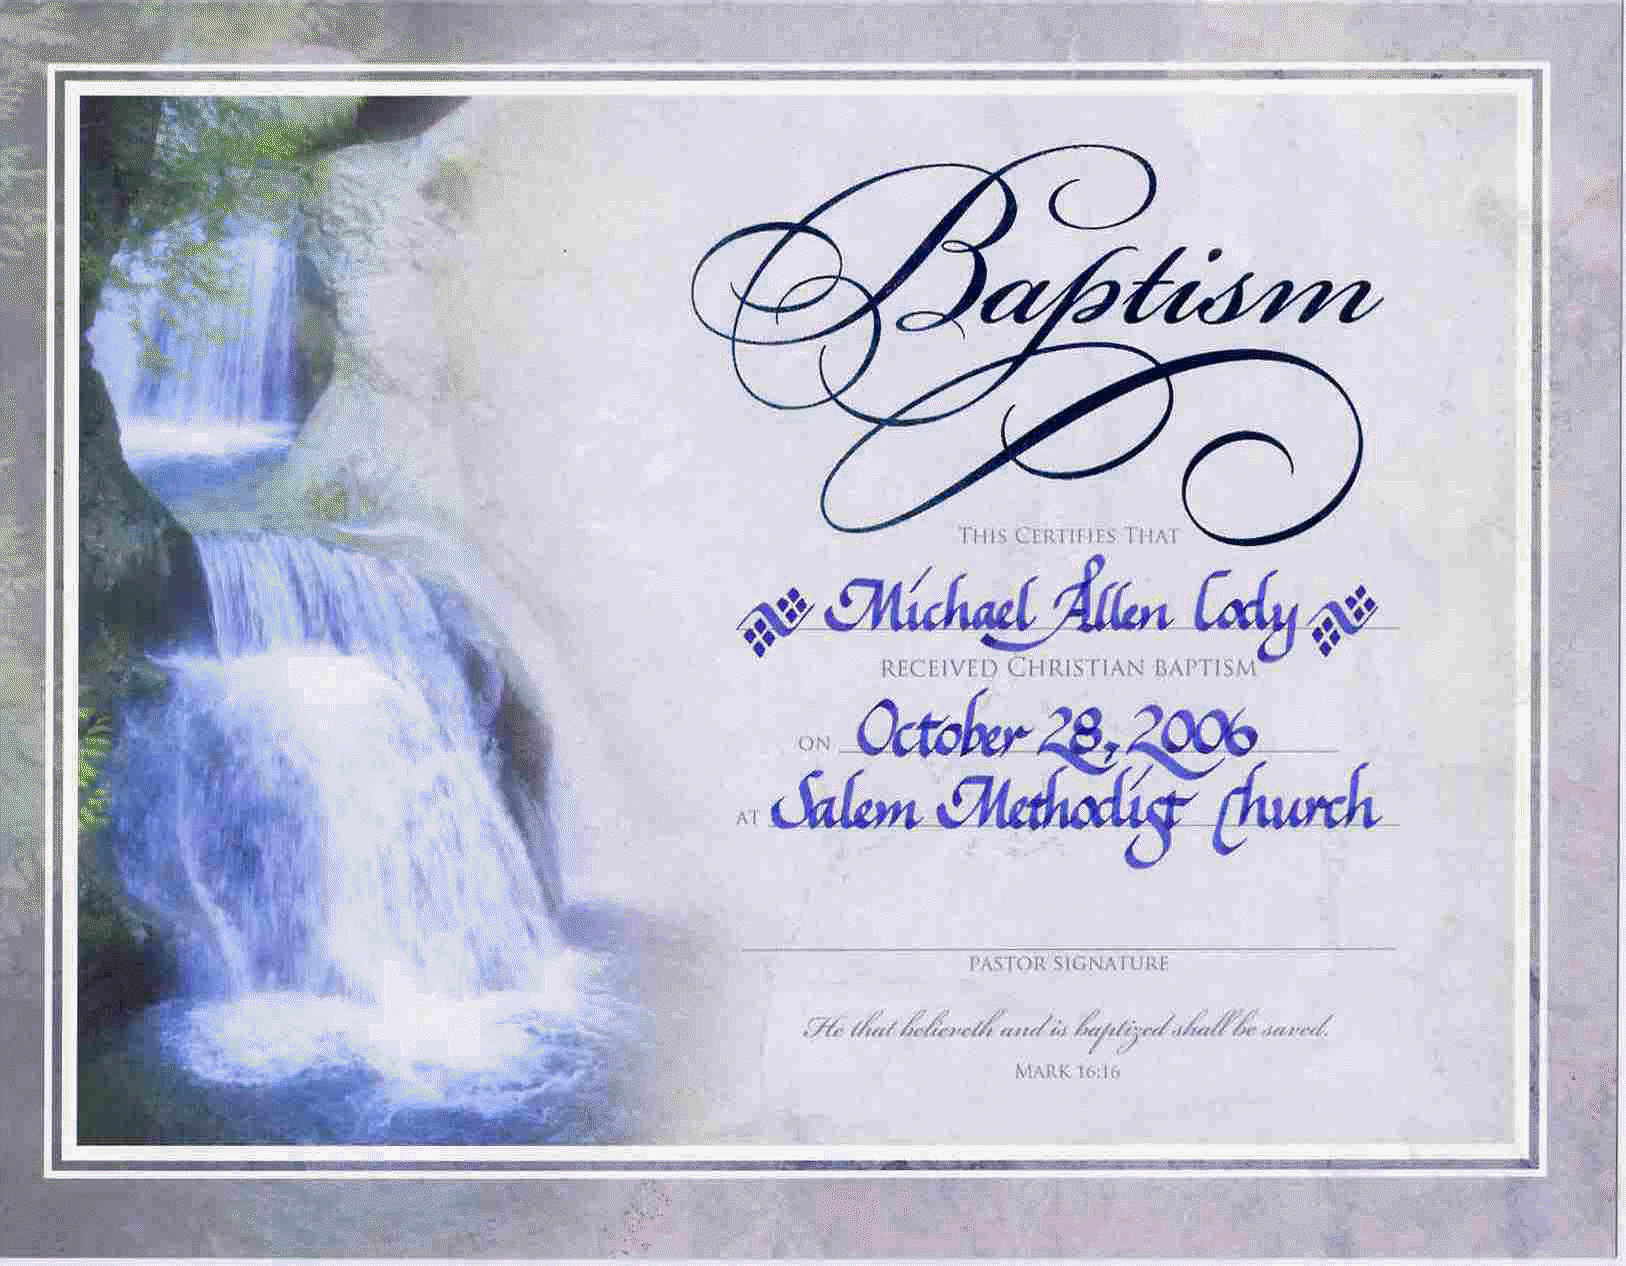 Water Baptism Certificate encephaloscom encephaloscom